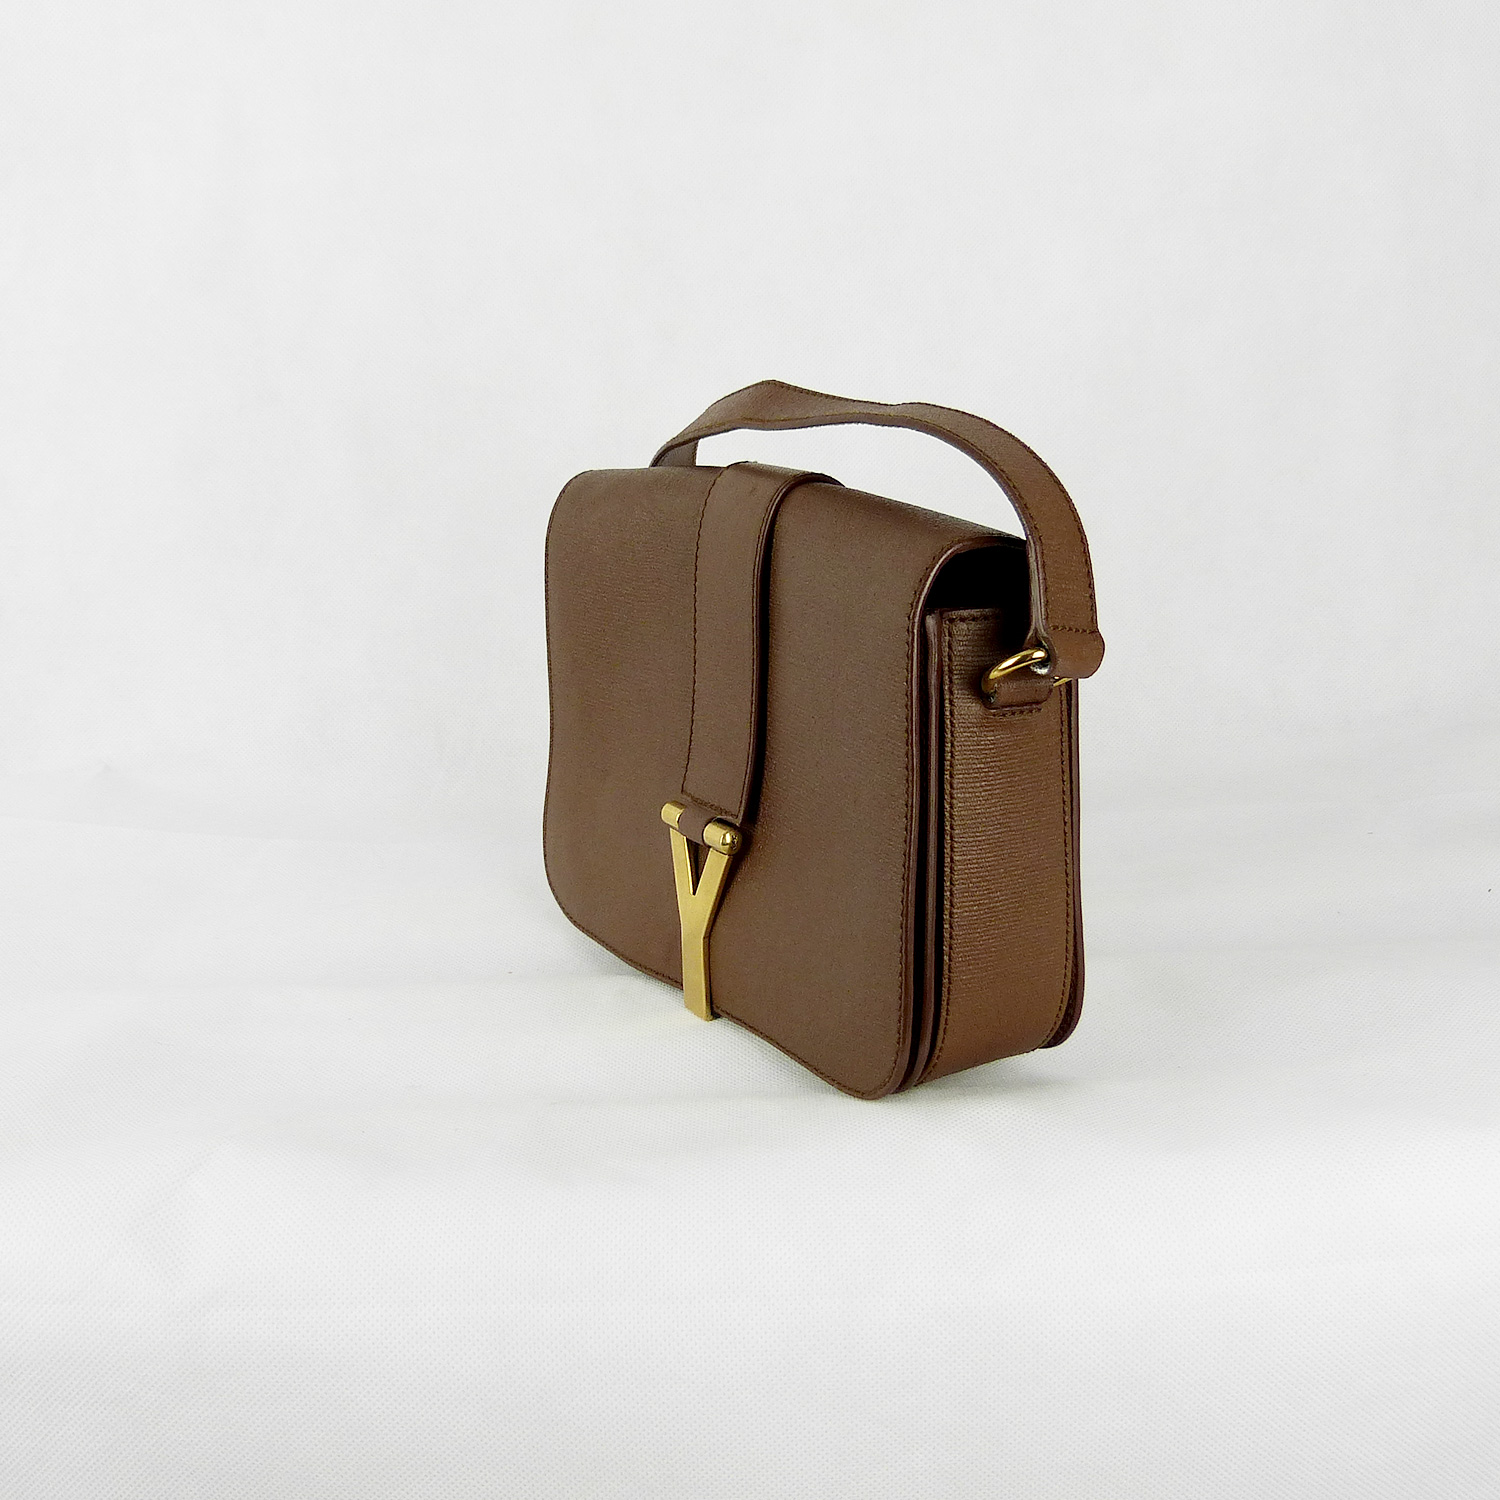 Sac à bandoulière Yves Saint Laurent Chyc Authentique d'occasion en cuir légèrement grainé couleur brun